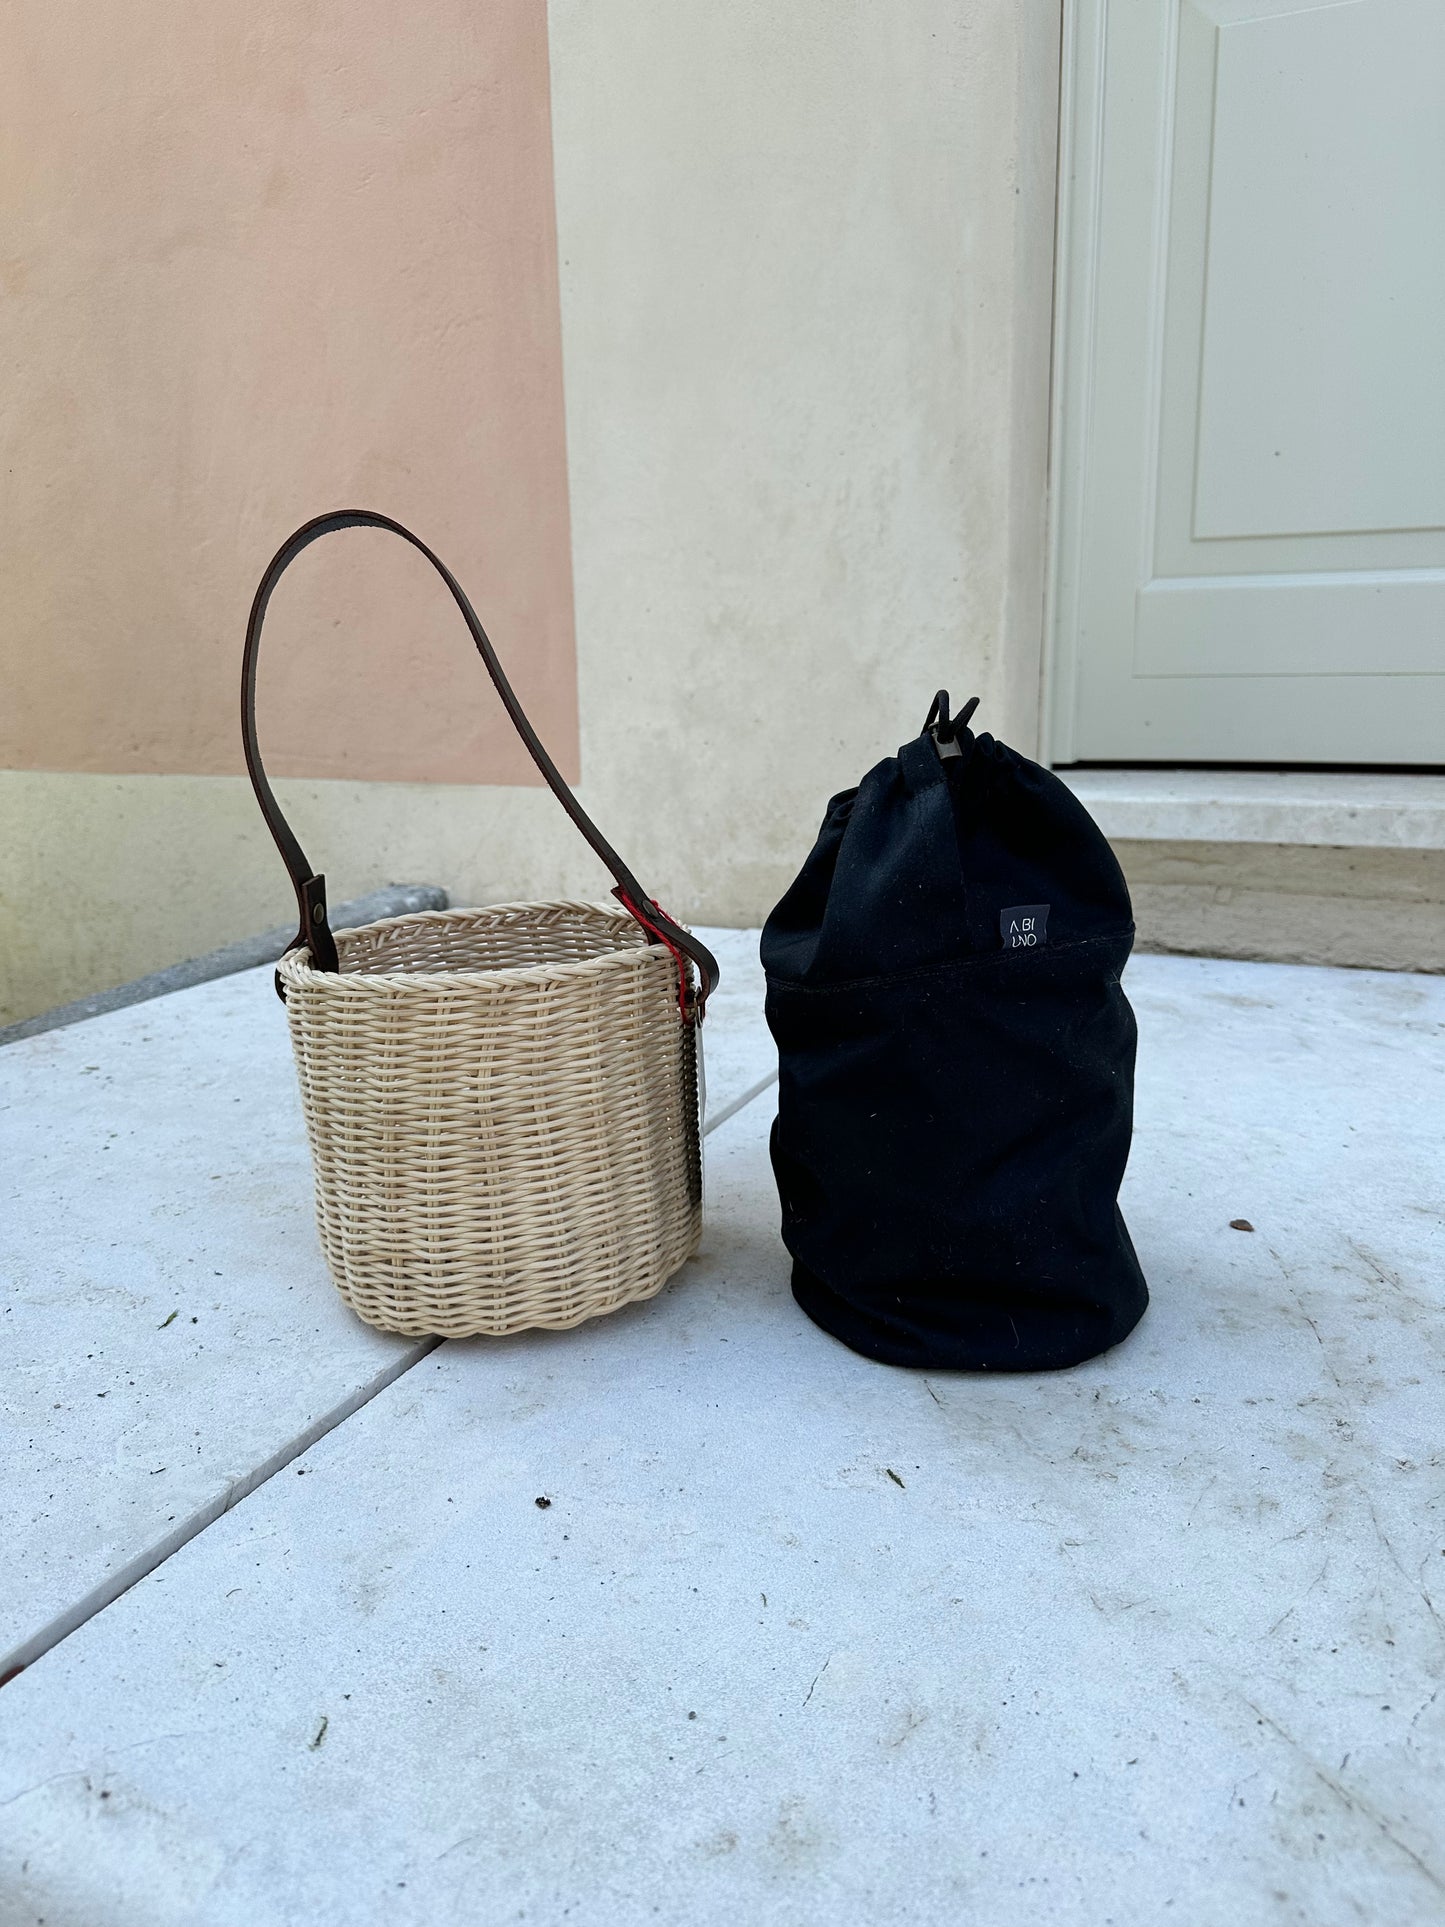 Abiuno - Basket Small Black